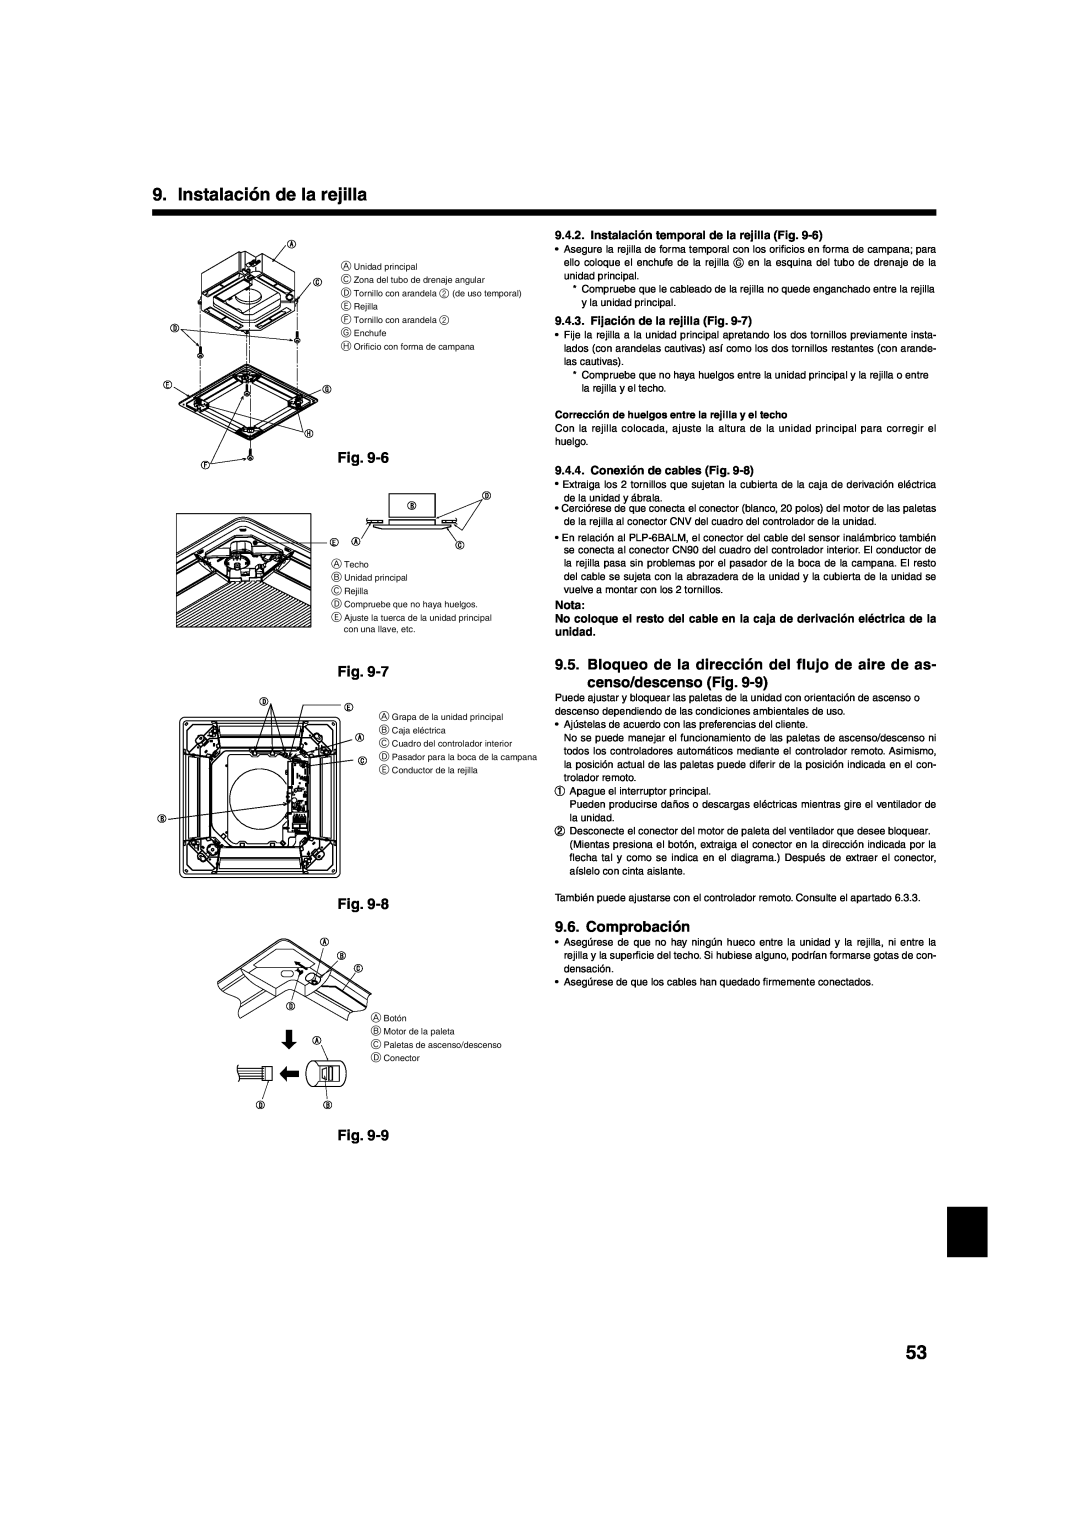 Mitsumi electronic PLA-ABA Comprobación, Instalación de la rejilla, Instalación temporal de la rejilla Fig, Nota 